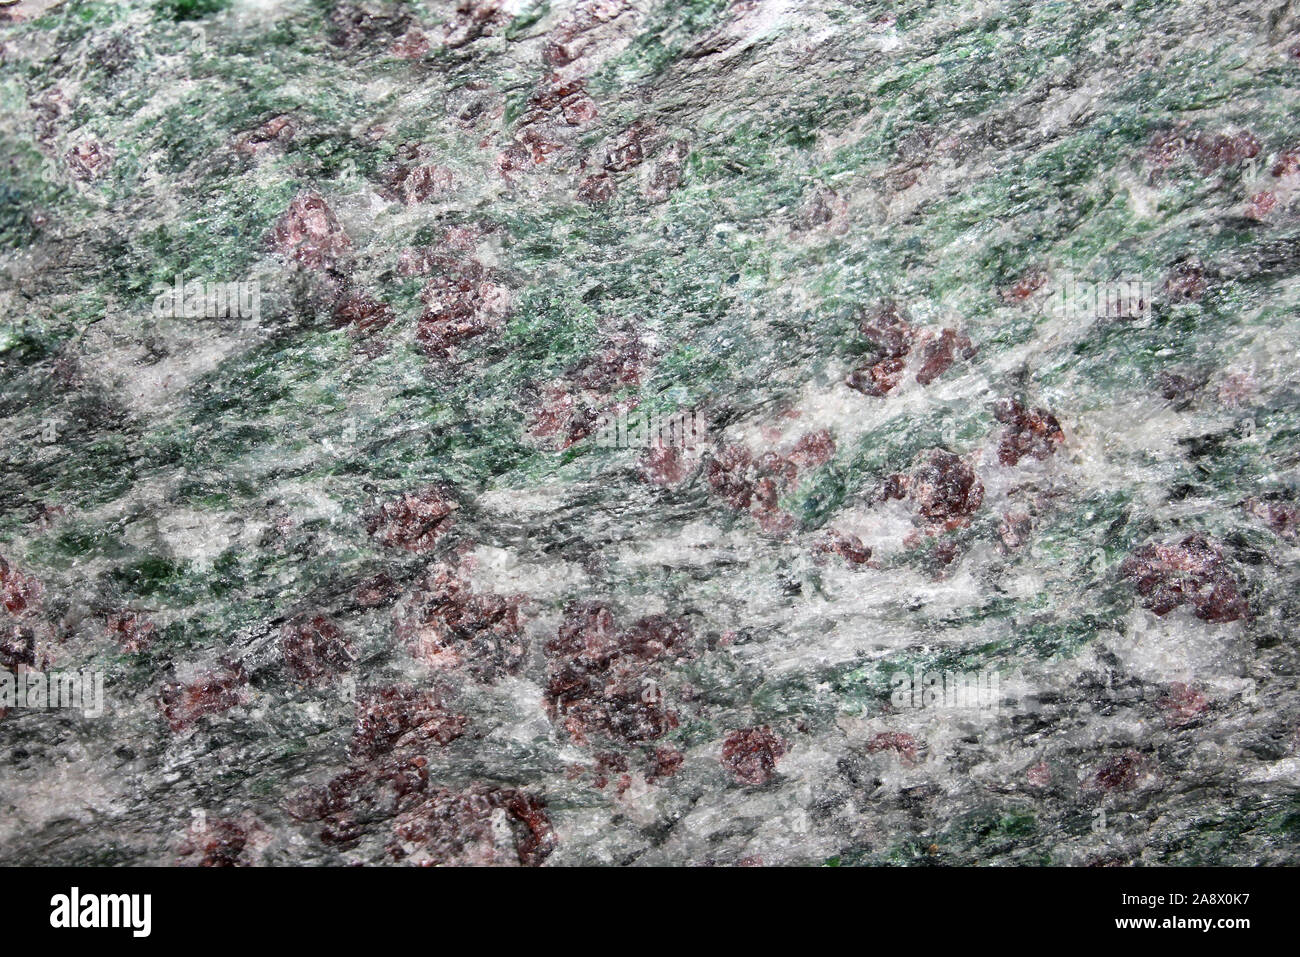 Eine Eclogite mafic metamorphes Gestein - Norwegen Stockfoto